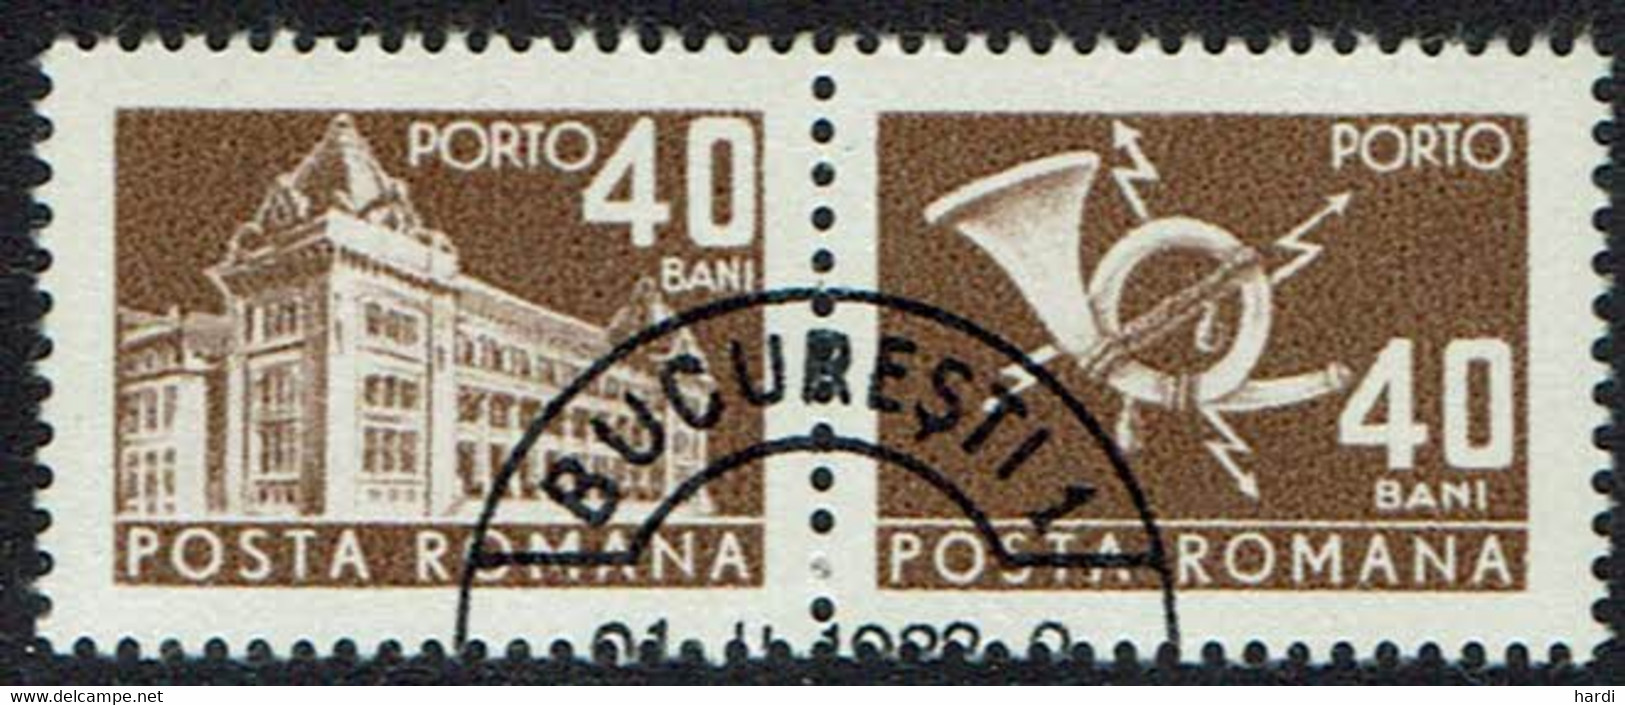 Rumänien Portomarken 1967, Mi.Nr 111, Gestempelt - Segnatasse